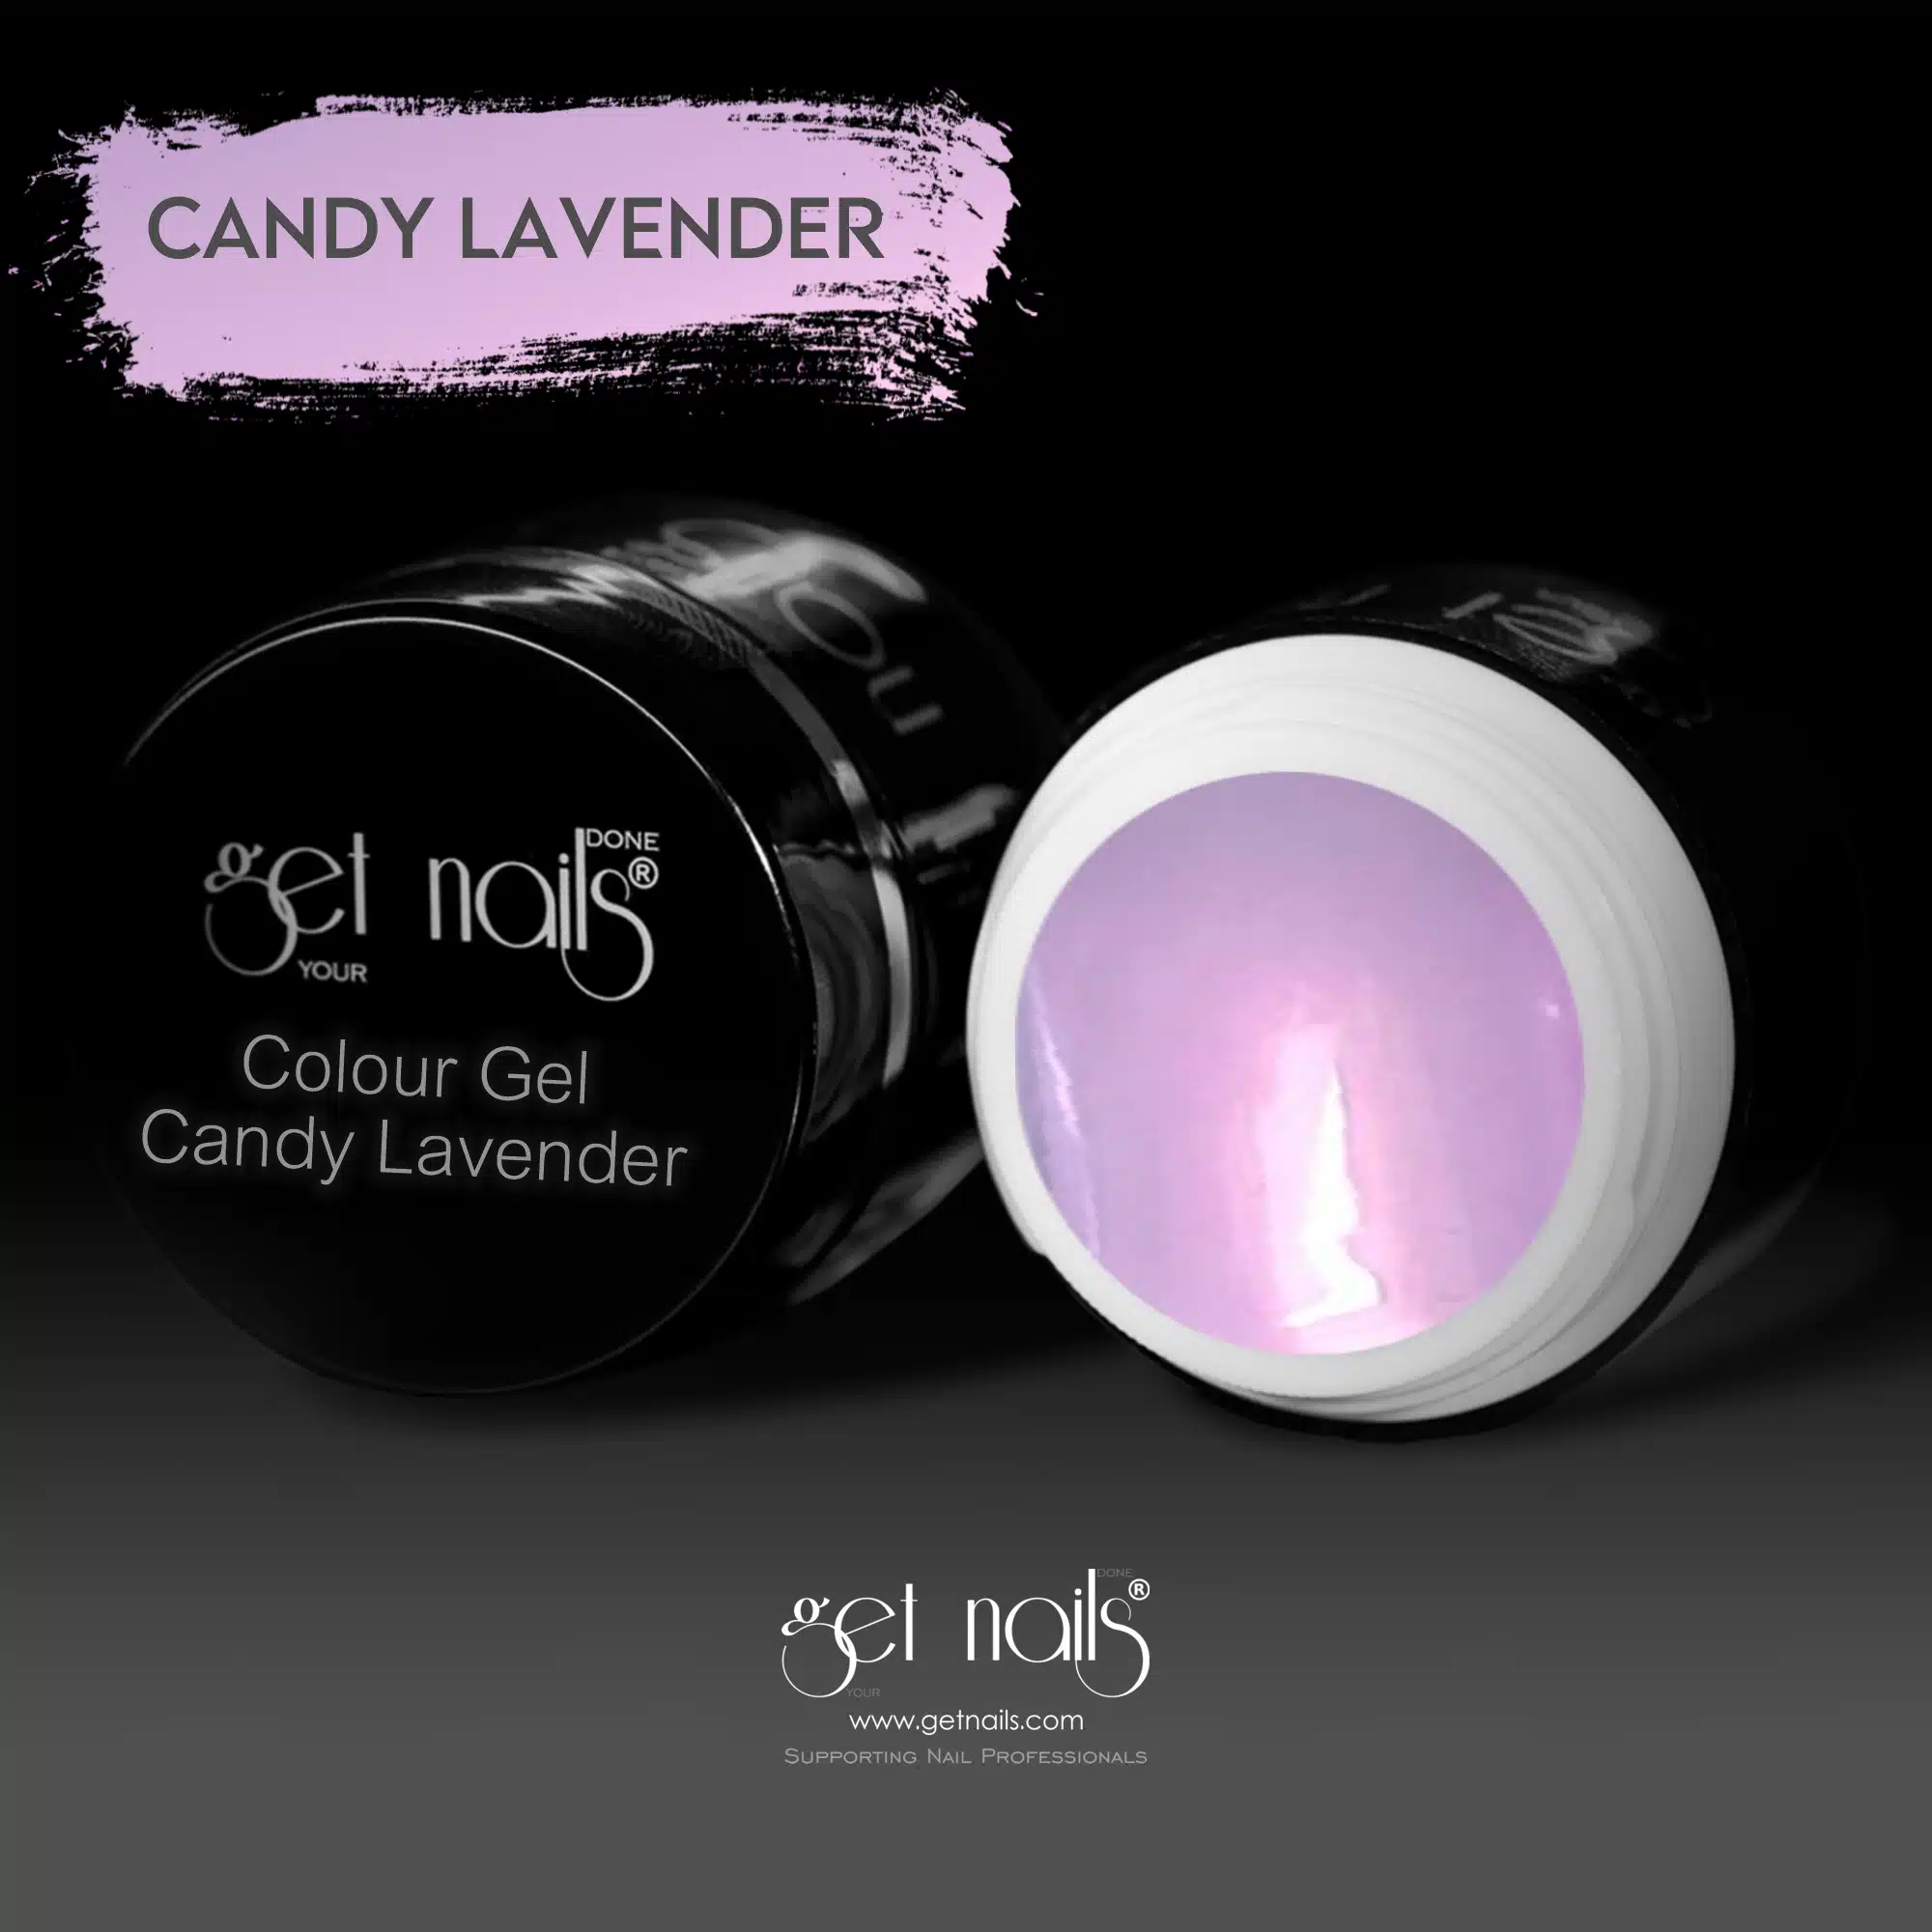 Get Nails Austria - Colour Gel Candy Lavender 5g